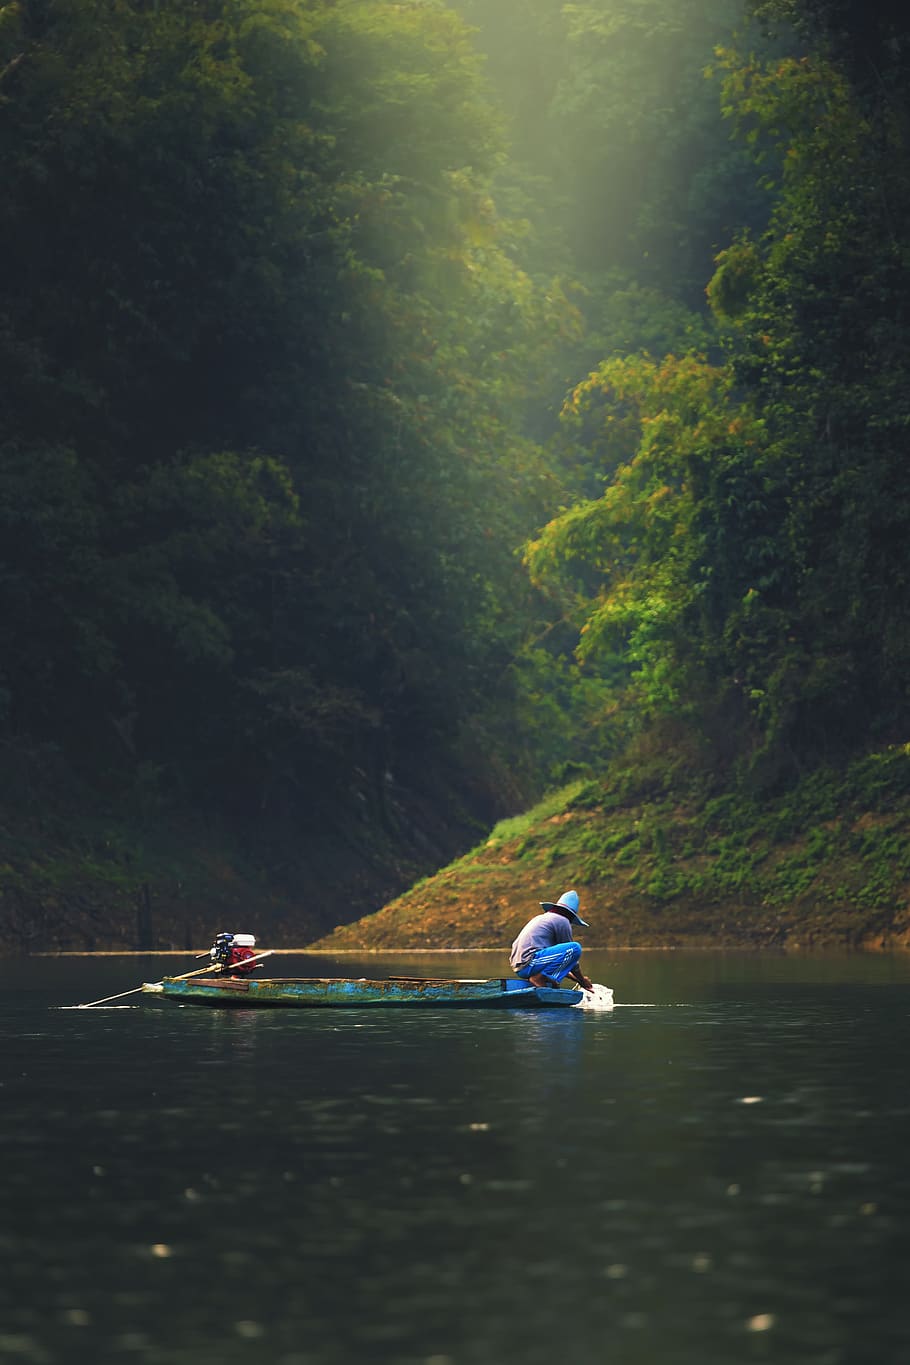 Hình nền Fishing Kayak: Sự kết hợp giữa sự thư giãn và hành động là điều tuyệt vời nhất khi đến với hình nền Fishing Kayak nổi bật này. Thử thách bản thân bằng cách đánh bắt cá và thư giãn với những cảm giác hoà vào thiên nhiên tươi đẹp.